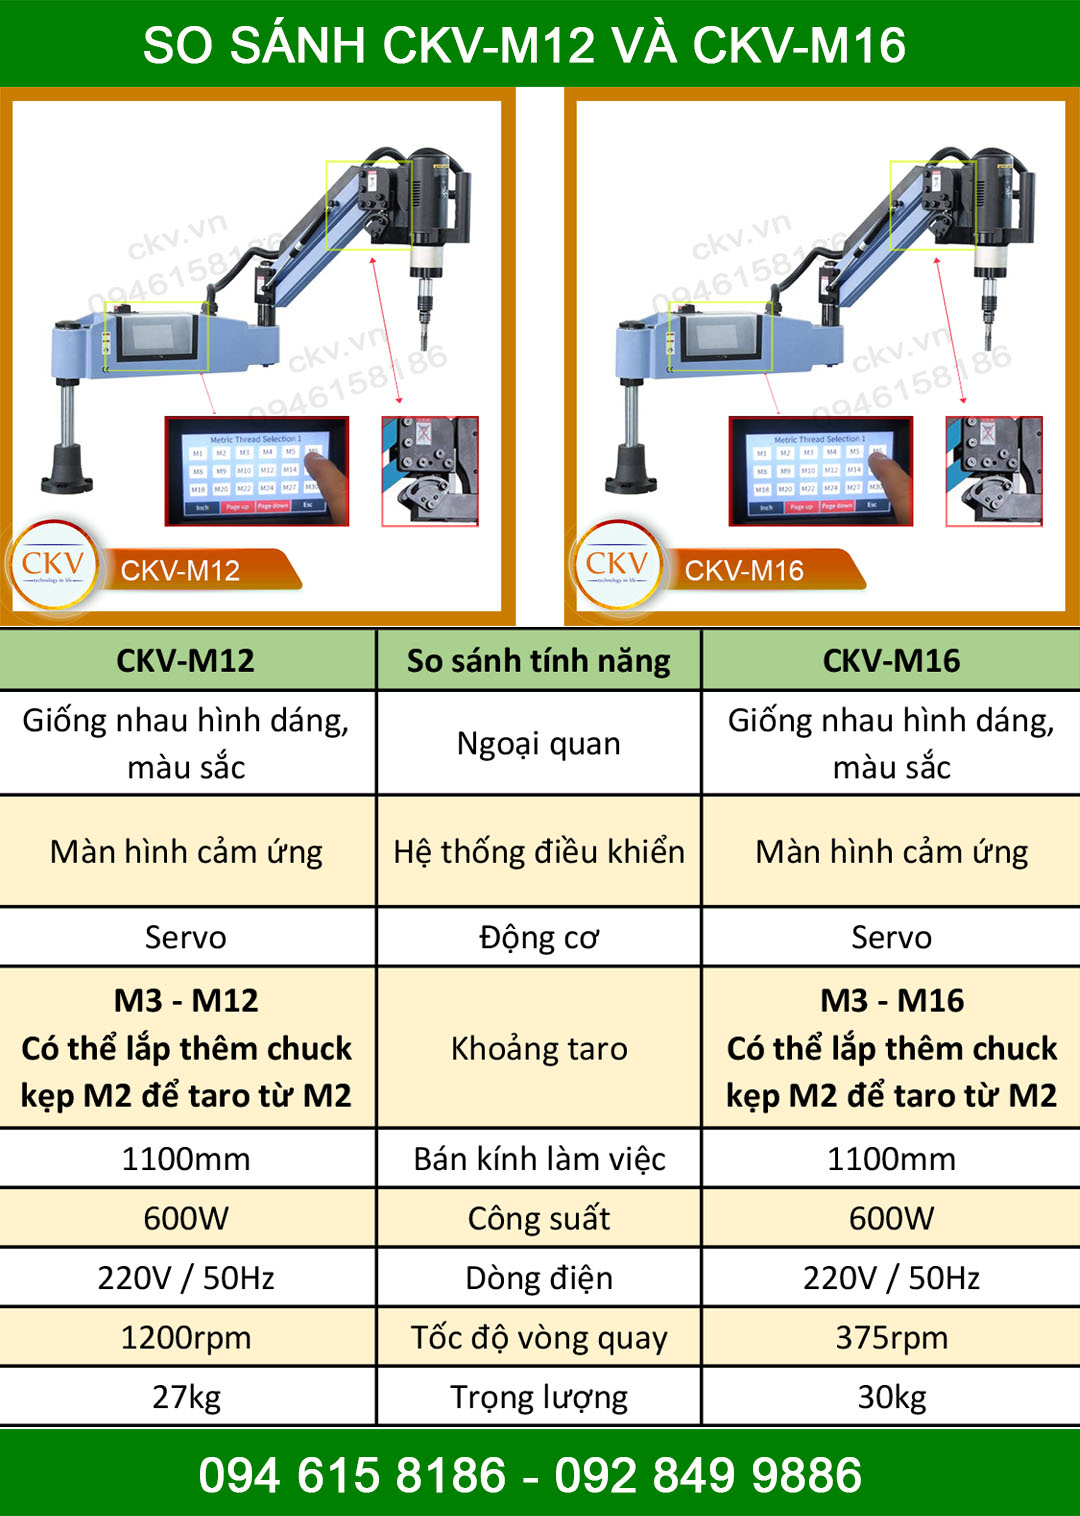 So sánh máy taro điện CKV-M12 và CKV-M16